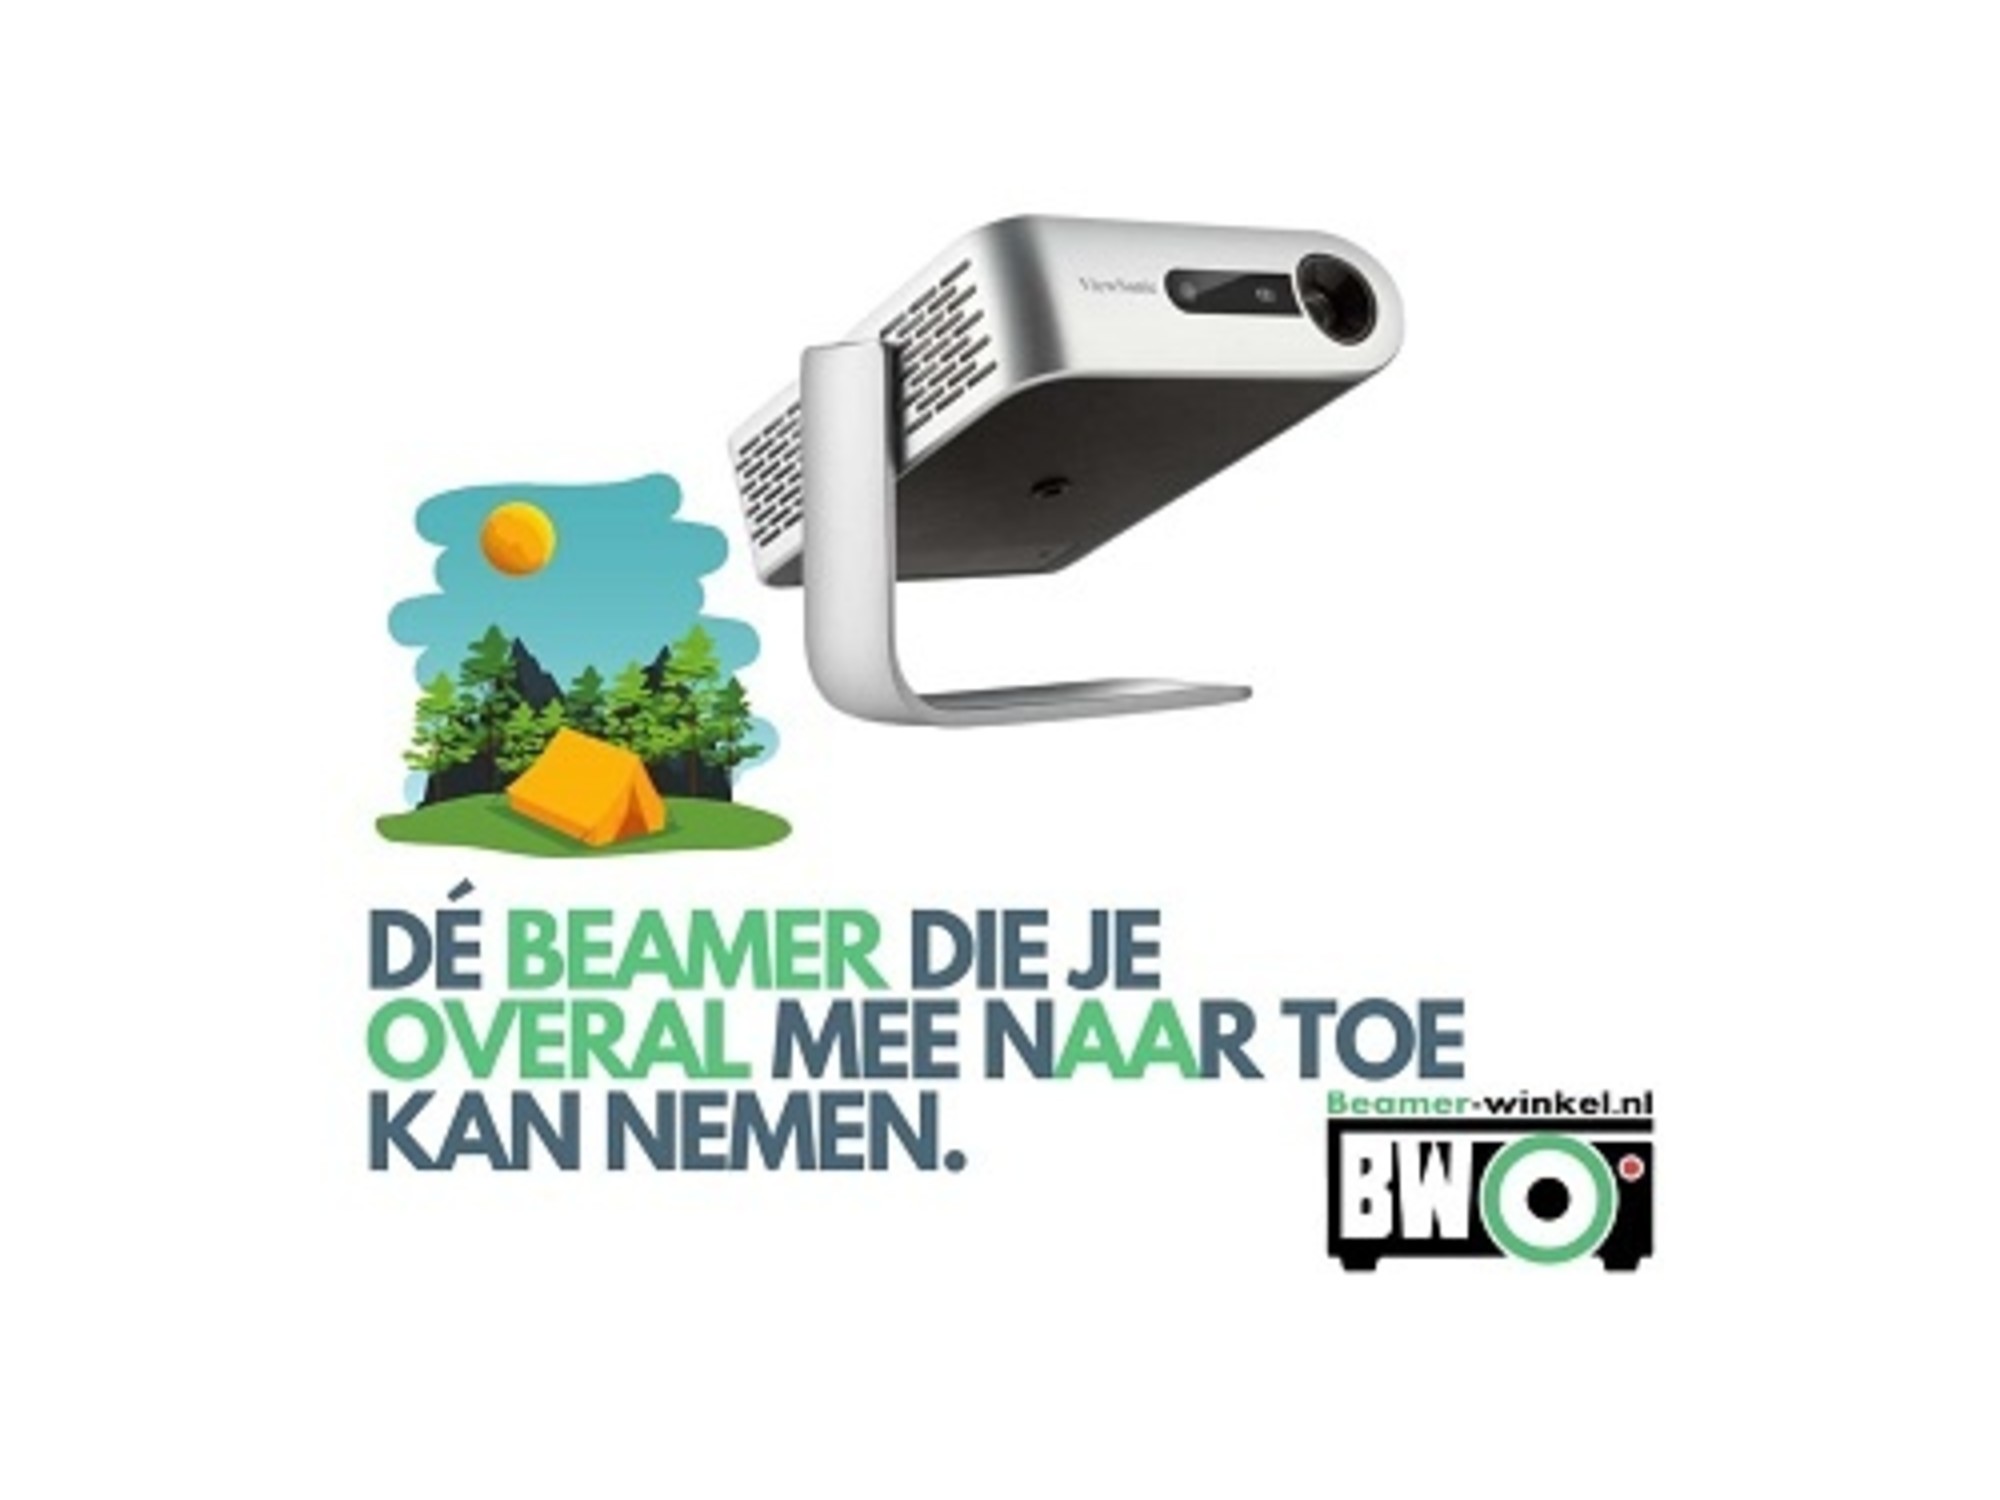 een keer Menagerry schade Mini Beamer - De beste mini beamers voor camping, zakelijk en onderweg -  Beamer-winkel.nl